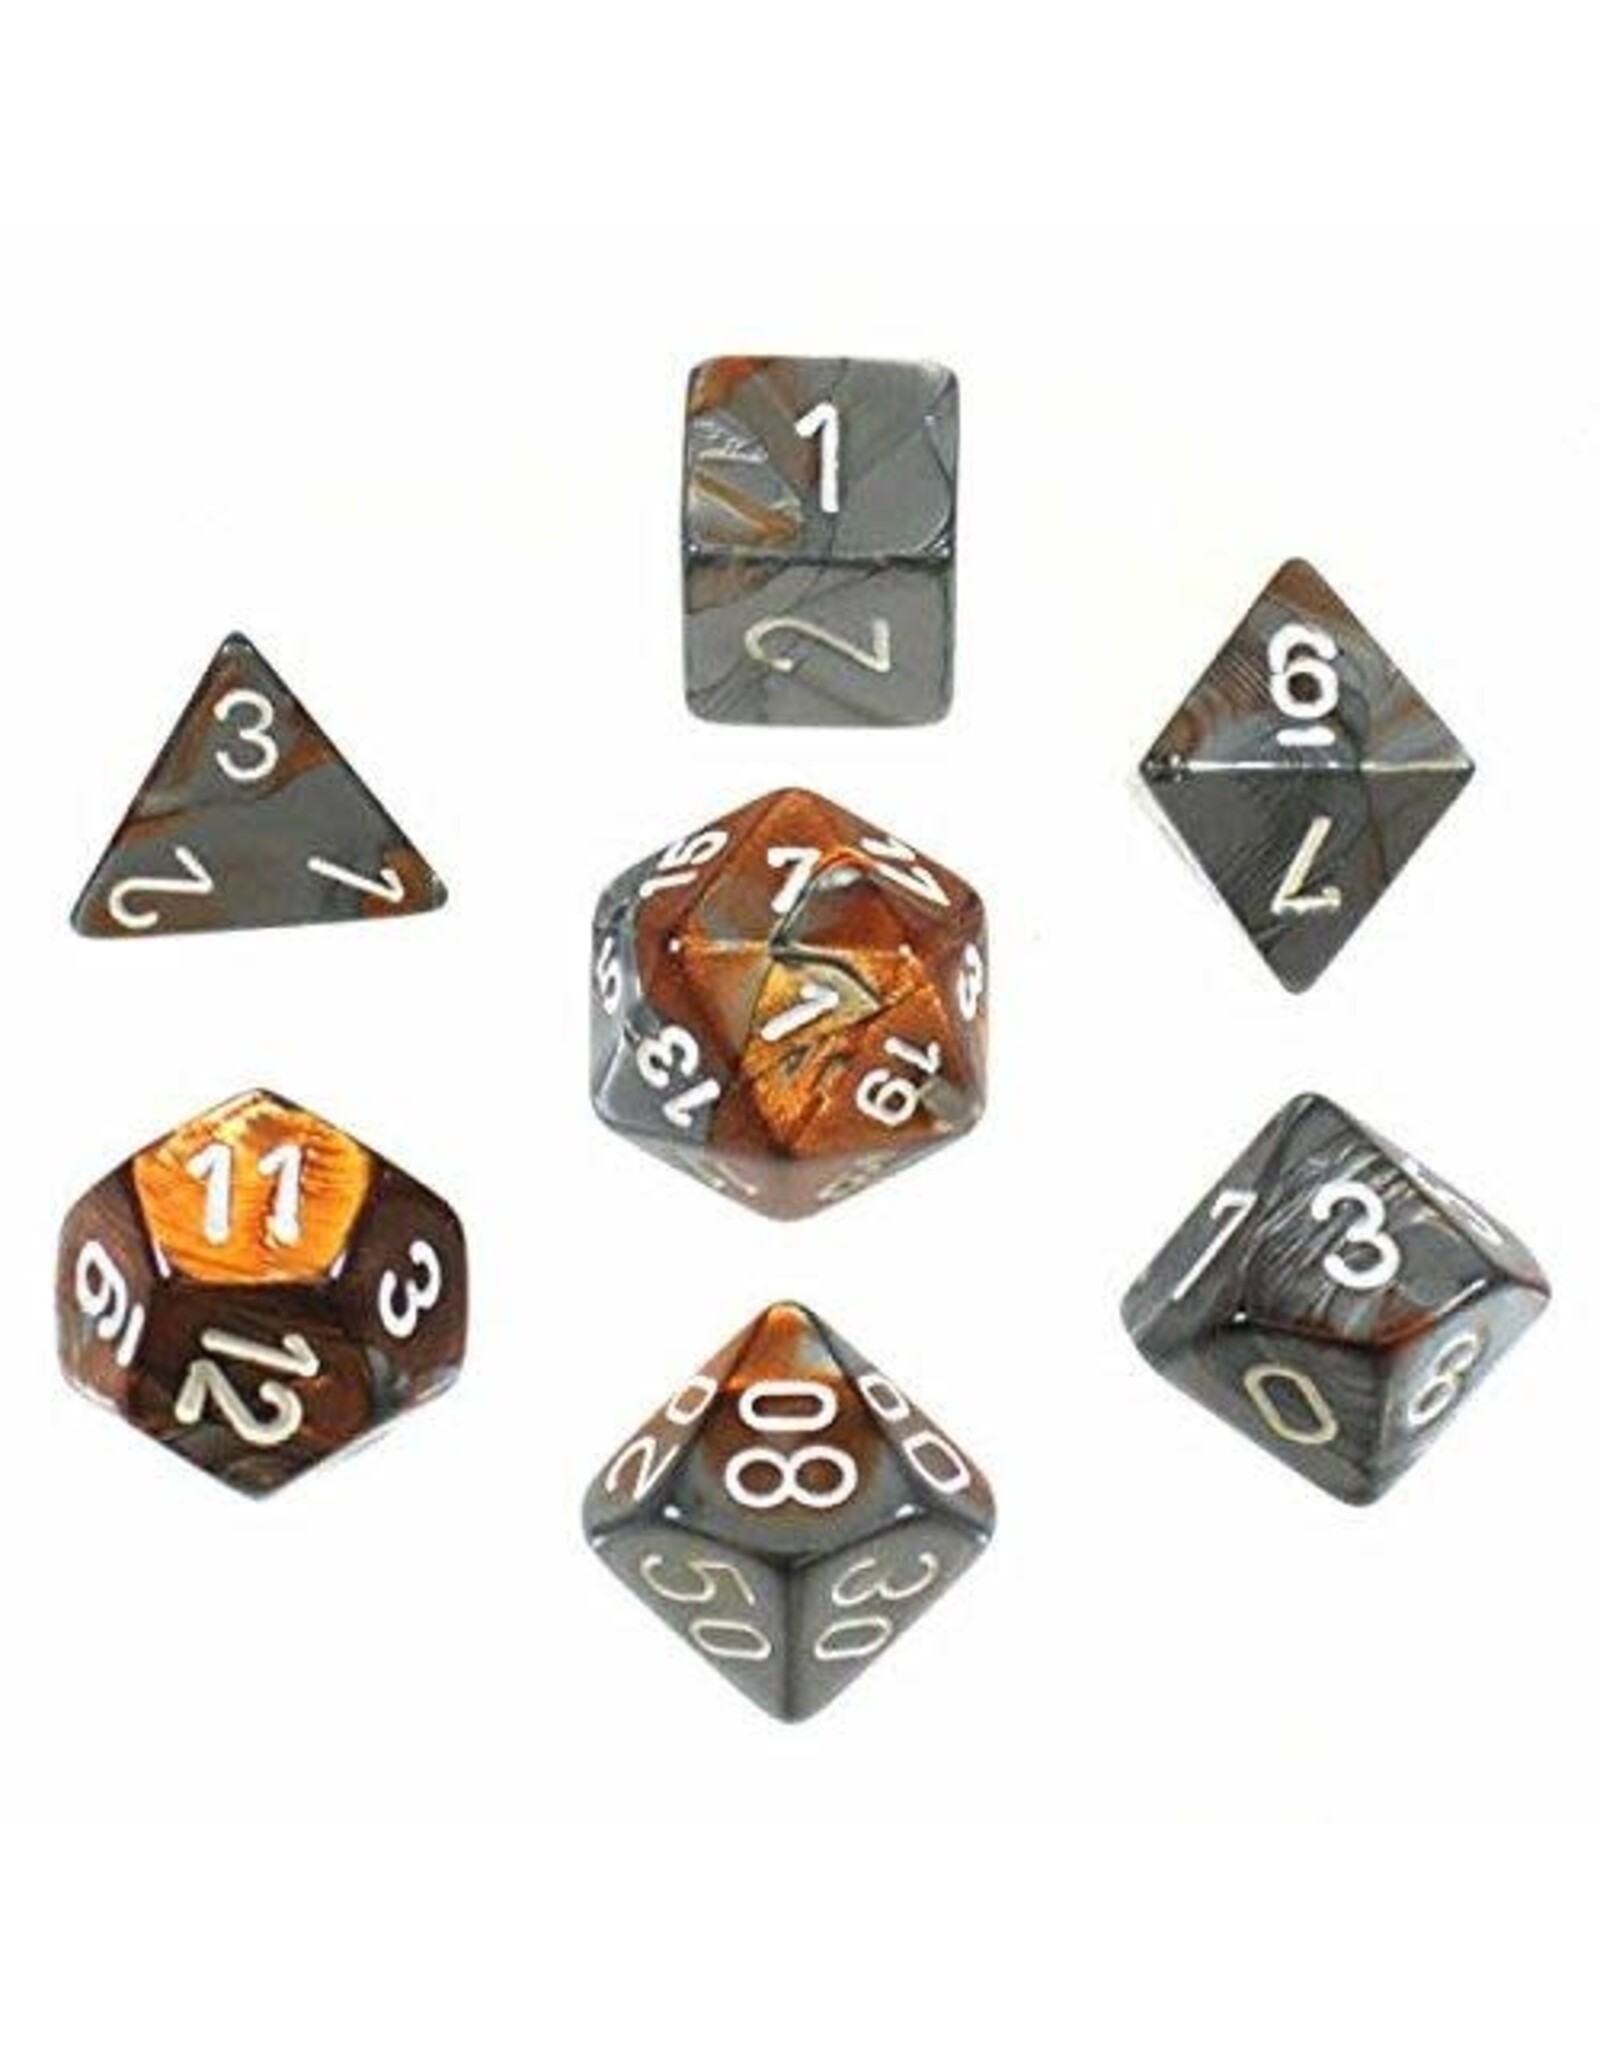 Chessex Copper-Steel w/white Gemini Poly 7 dice set